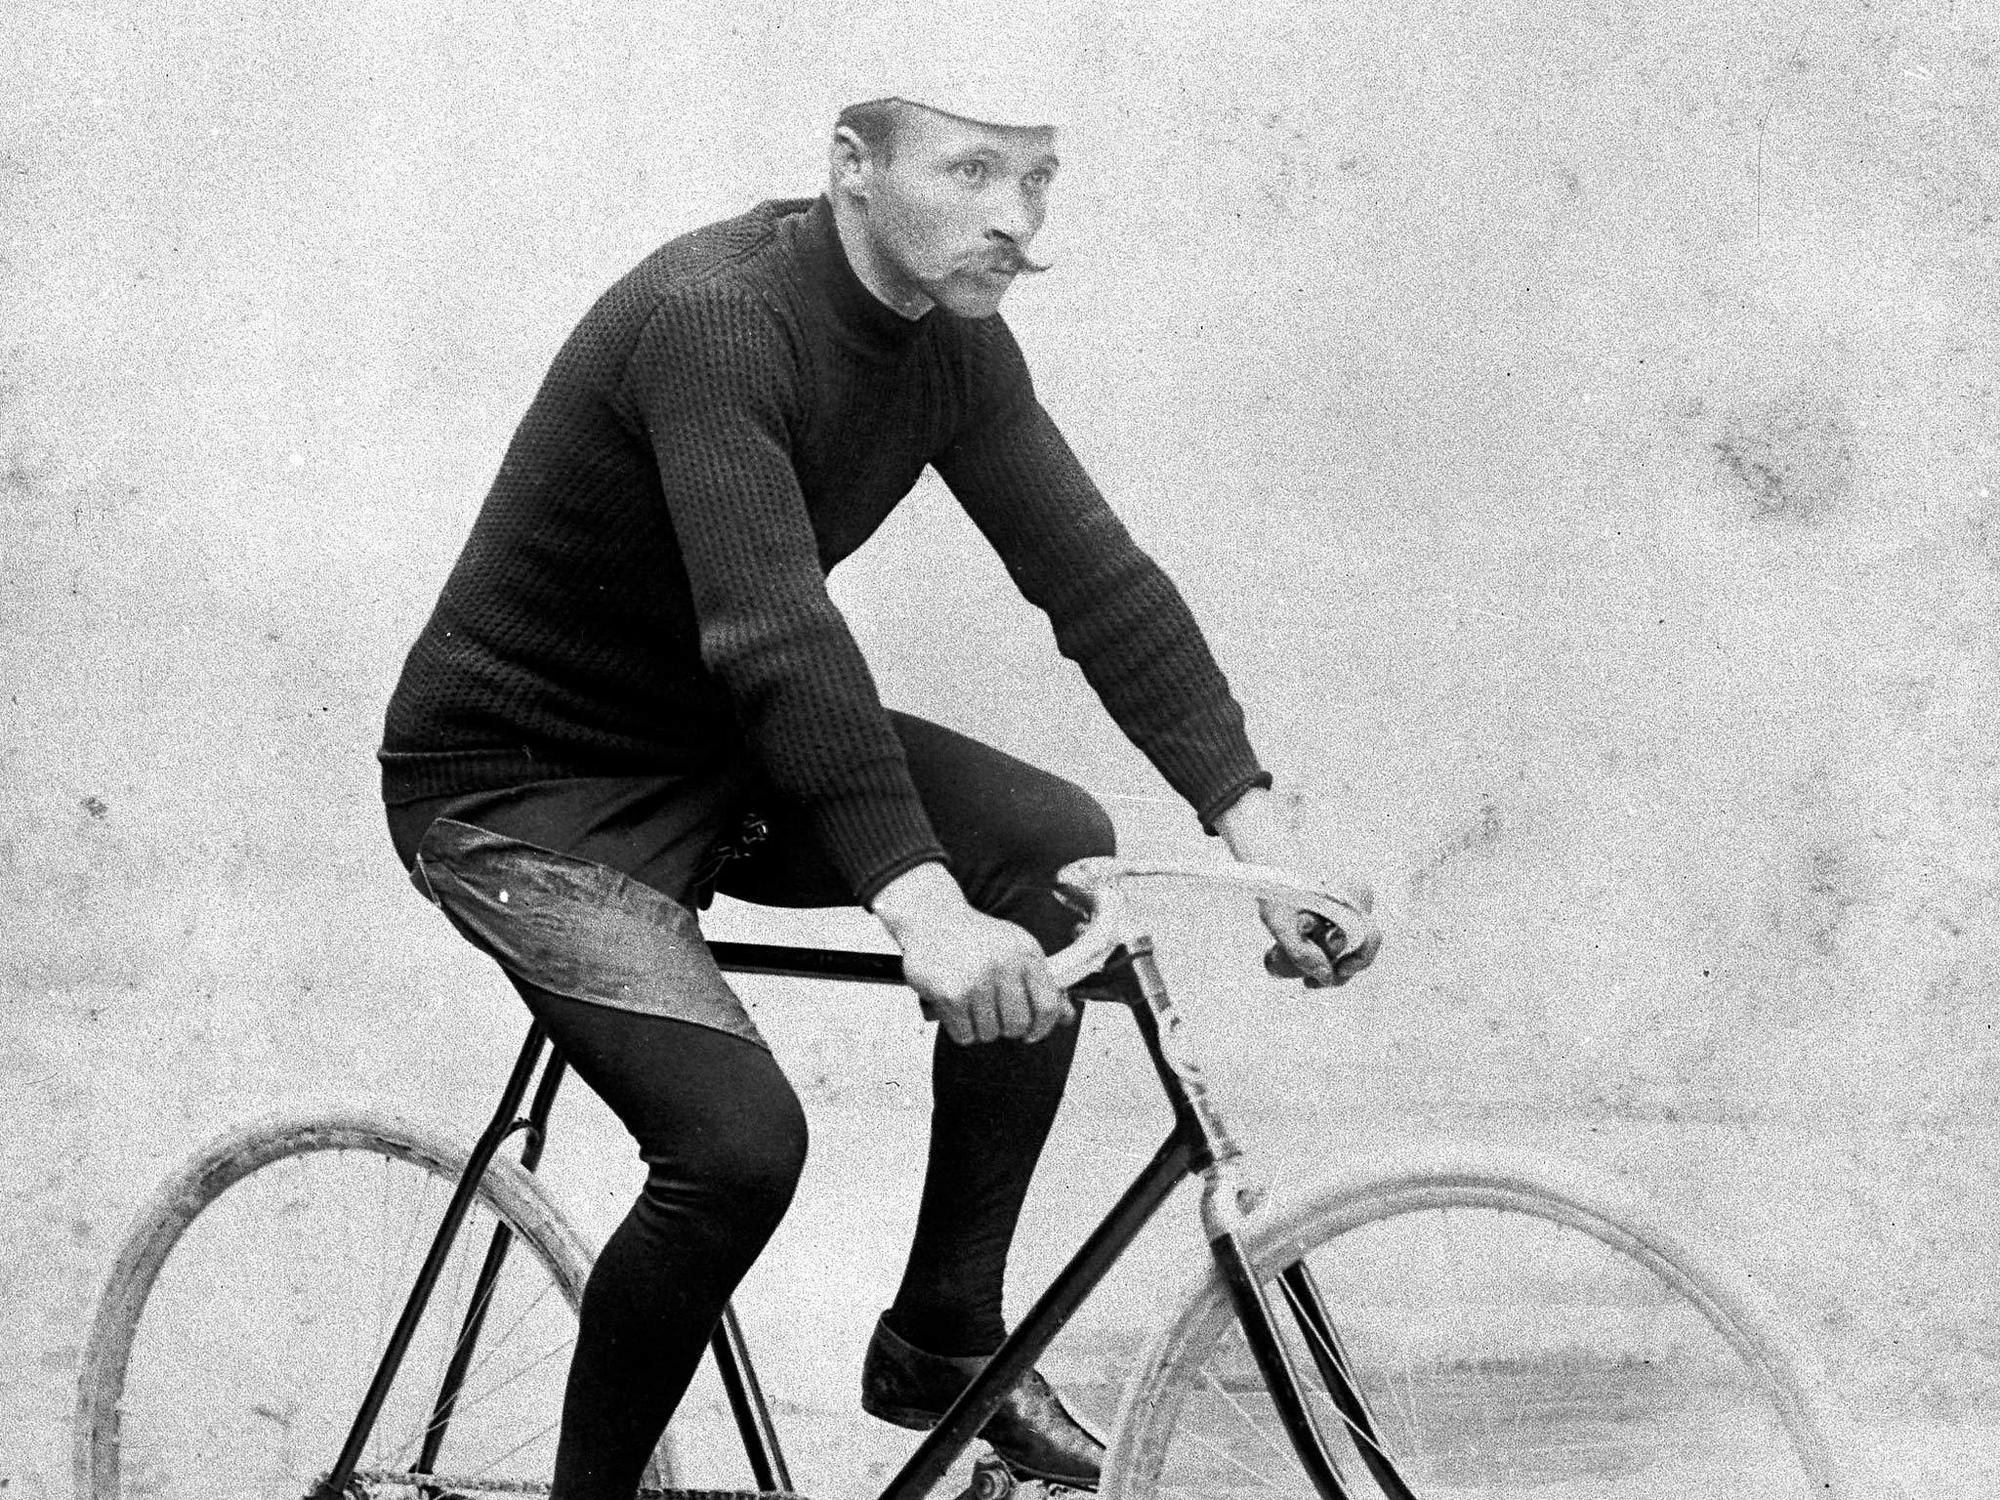 Maurice Garin bol priekopník všetkých podvodníkov na Tour de France.